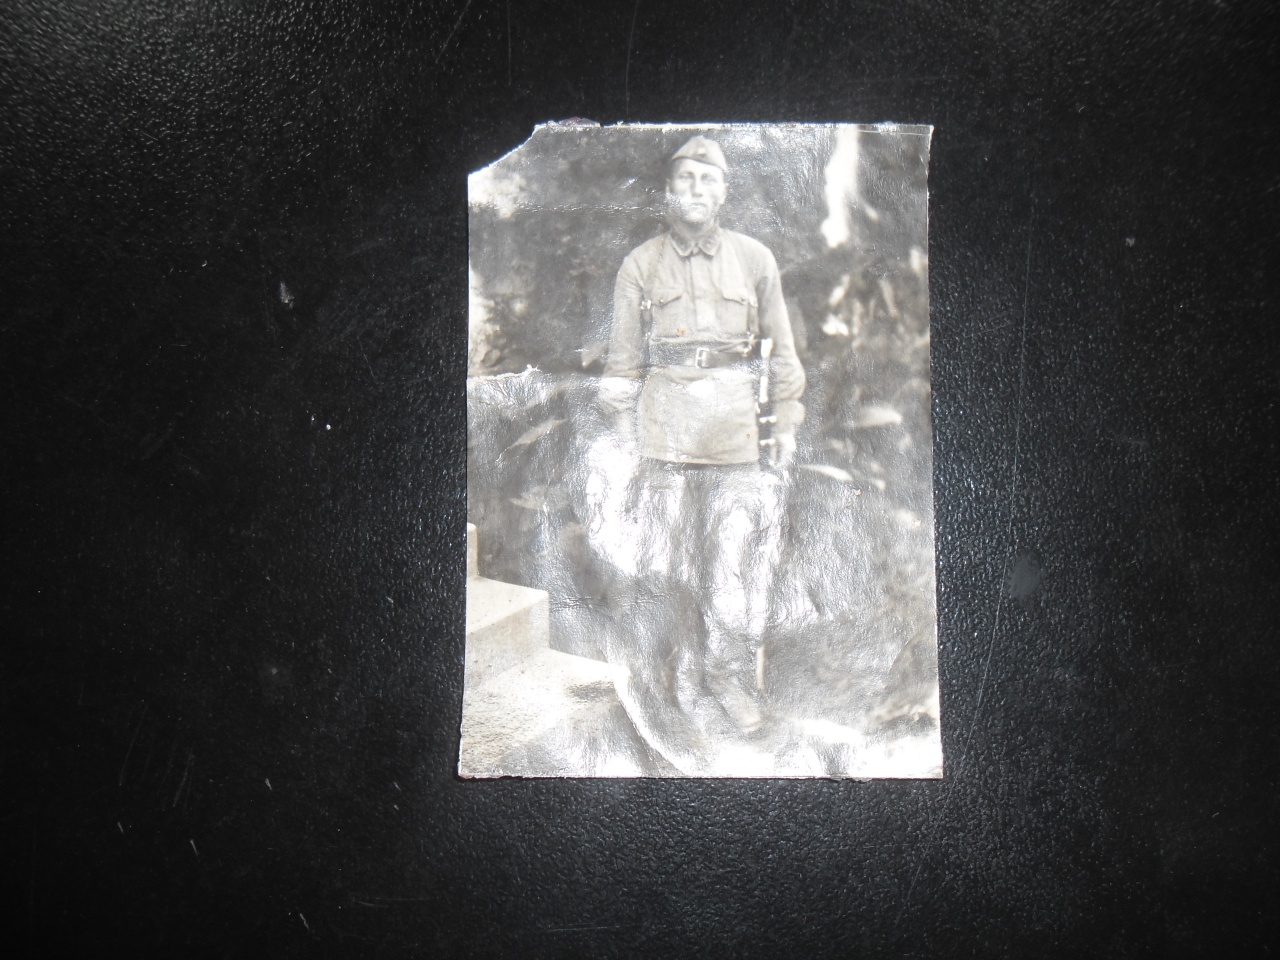 Լուսանկար՝ Ավետիք Խաչատրյանի (Հայրենական պատերազմի մասնակից)